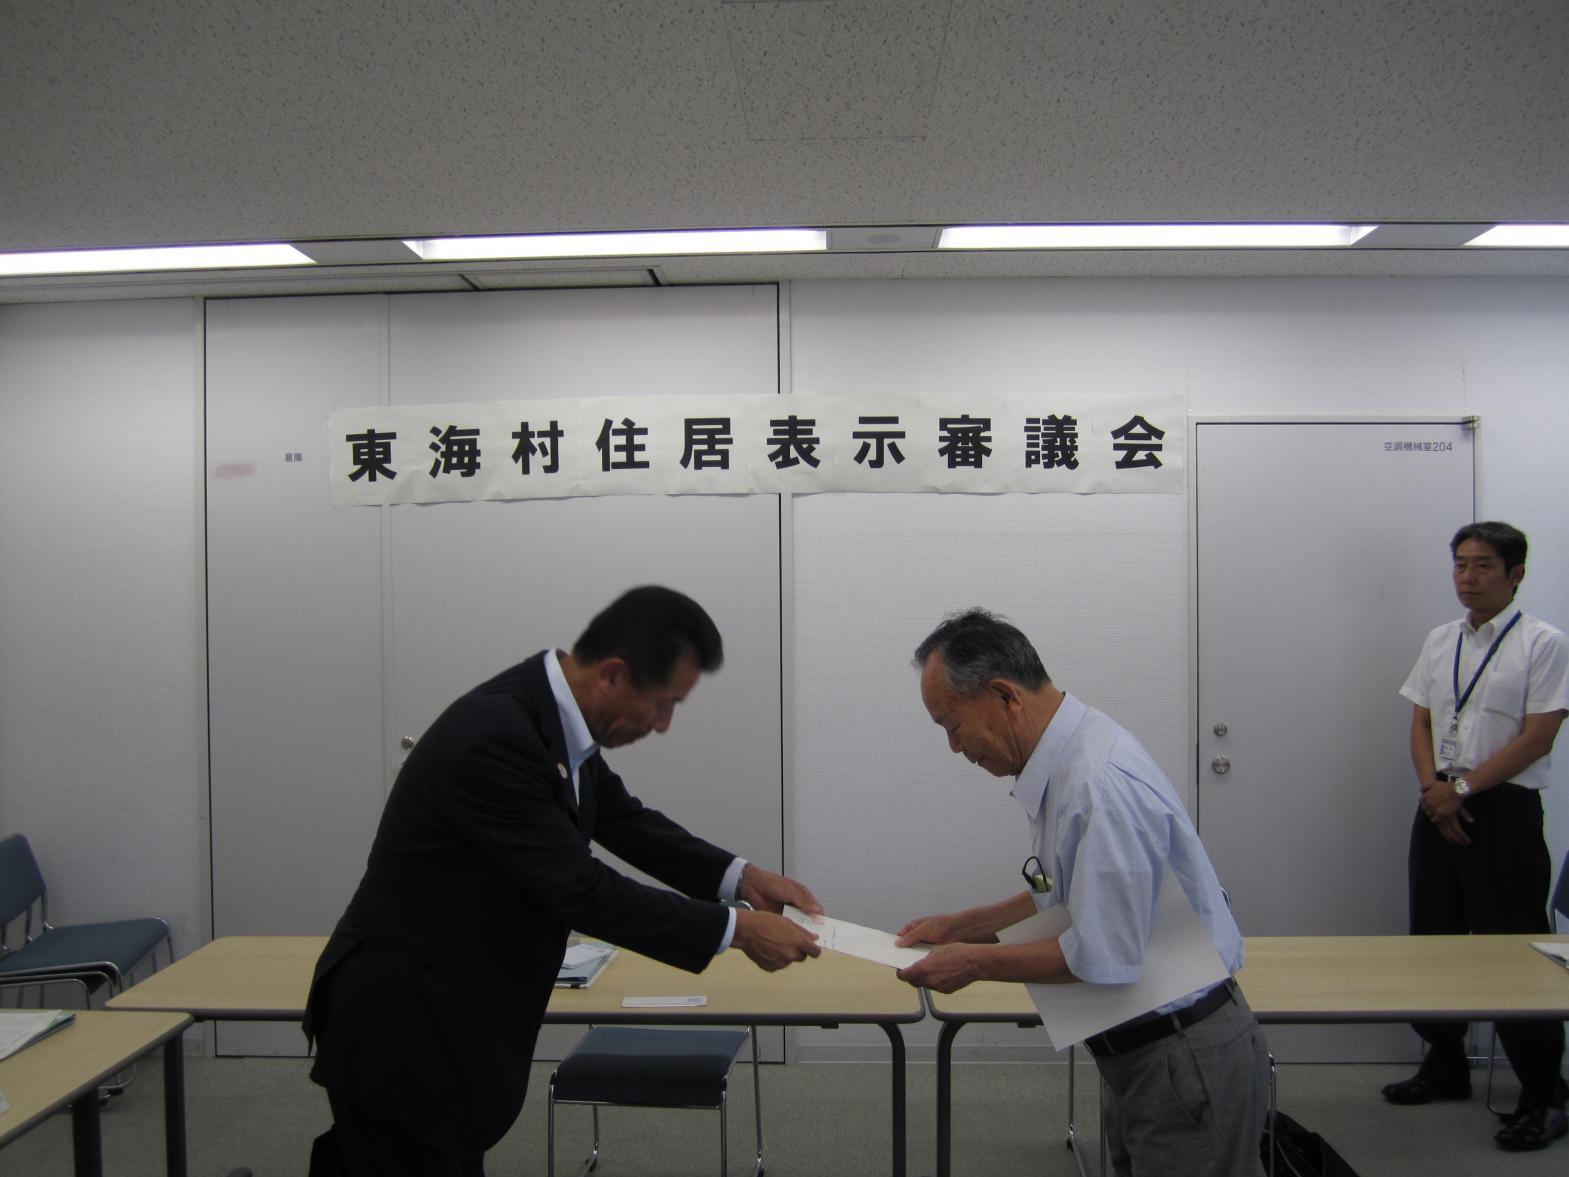 東海村住居表示審議会において、会議室にロの字型に並べられた机の内側で委嘱状を受ける寺門委員長の写真